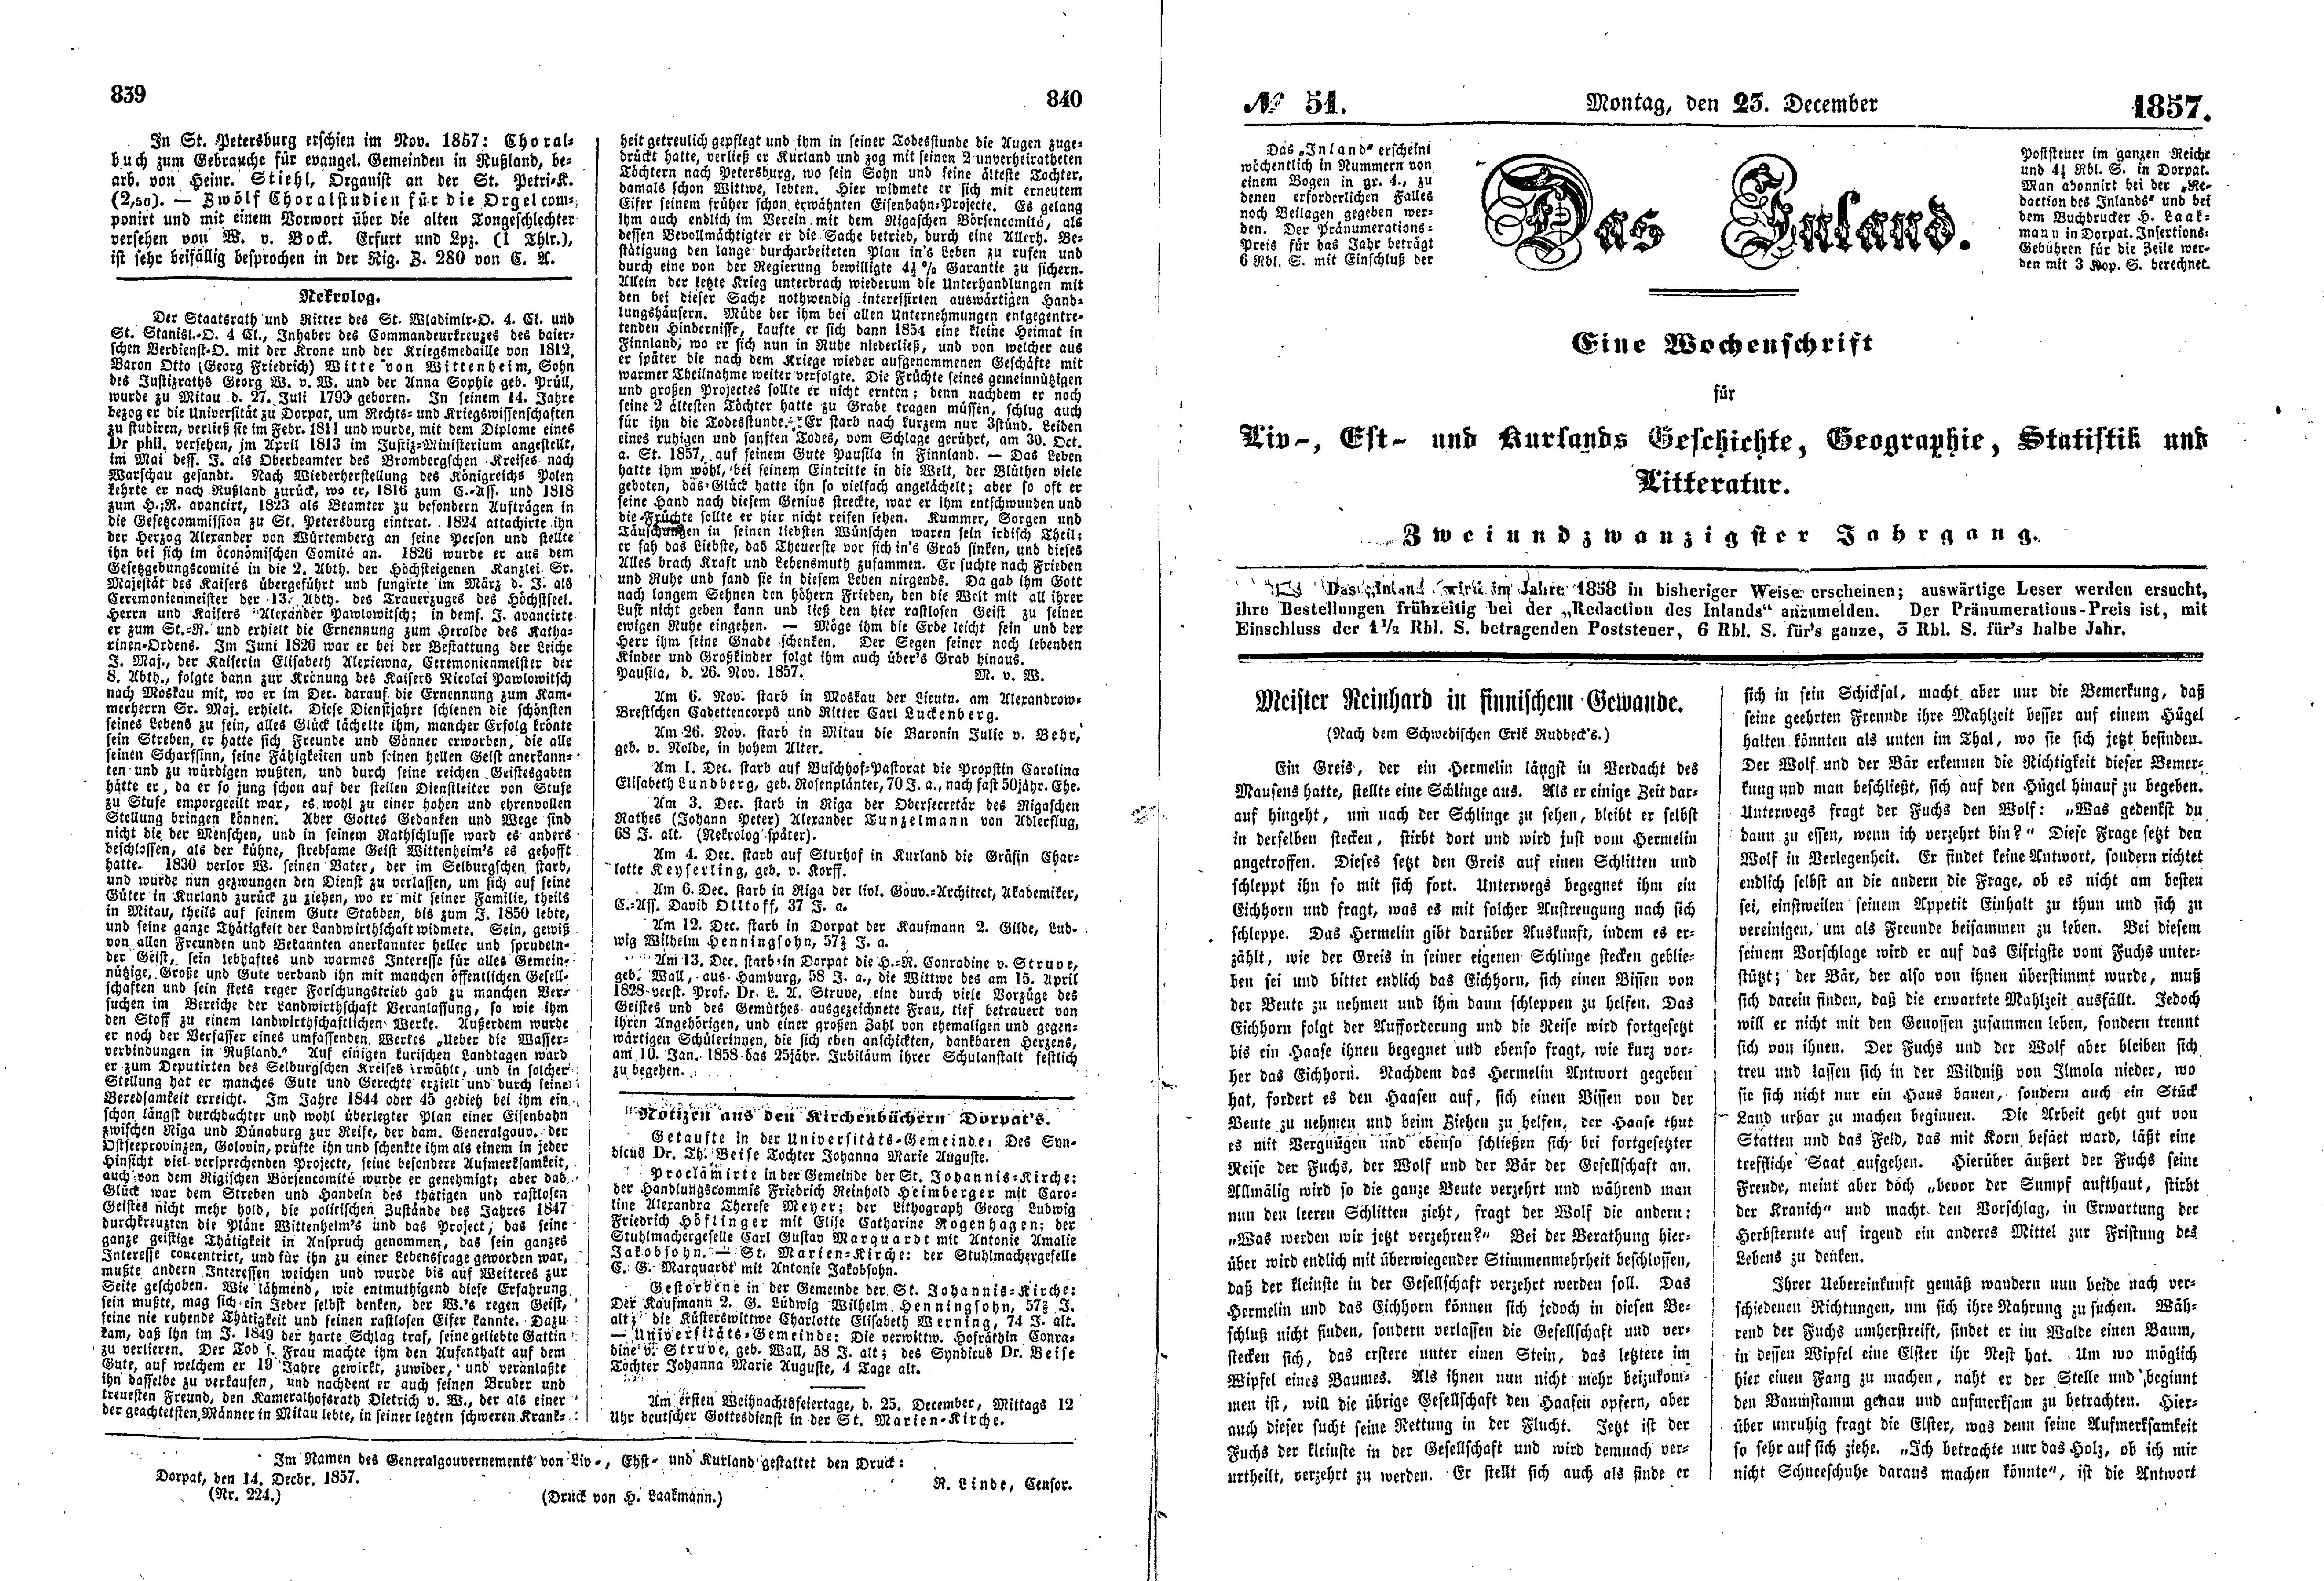 Meister Reinhard in finnischem Gewande (1857) | 1. (839-842) Haupttext